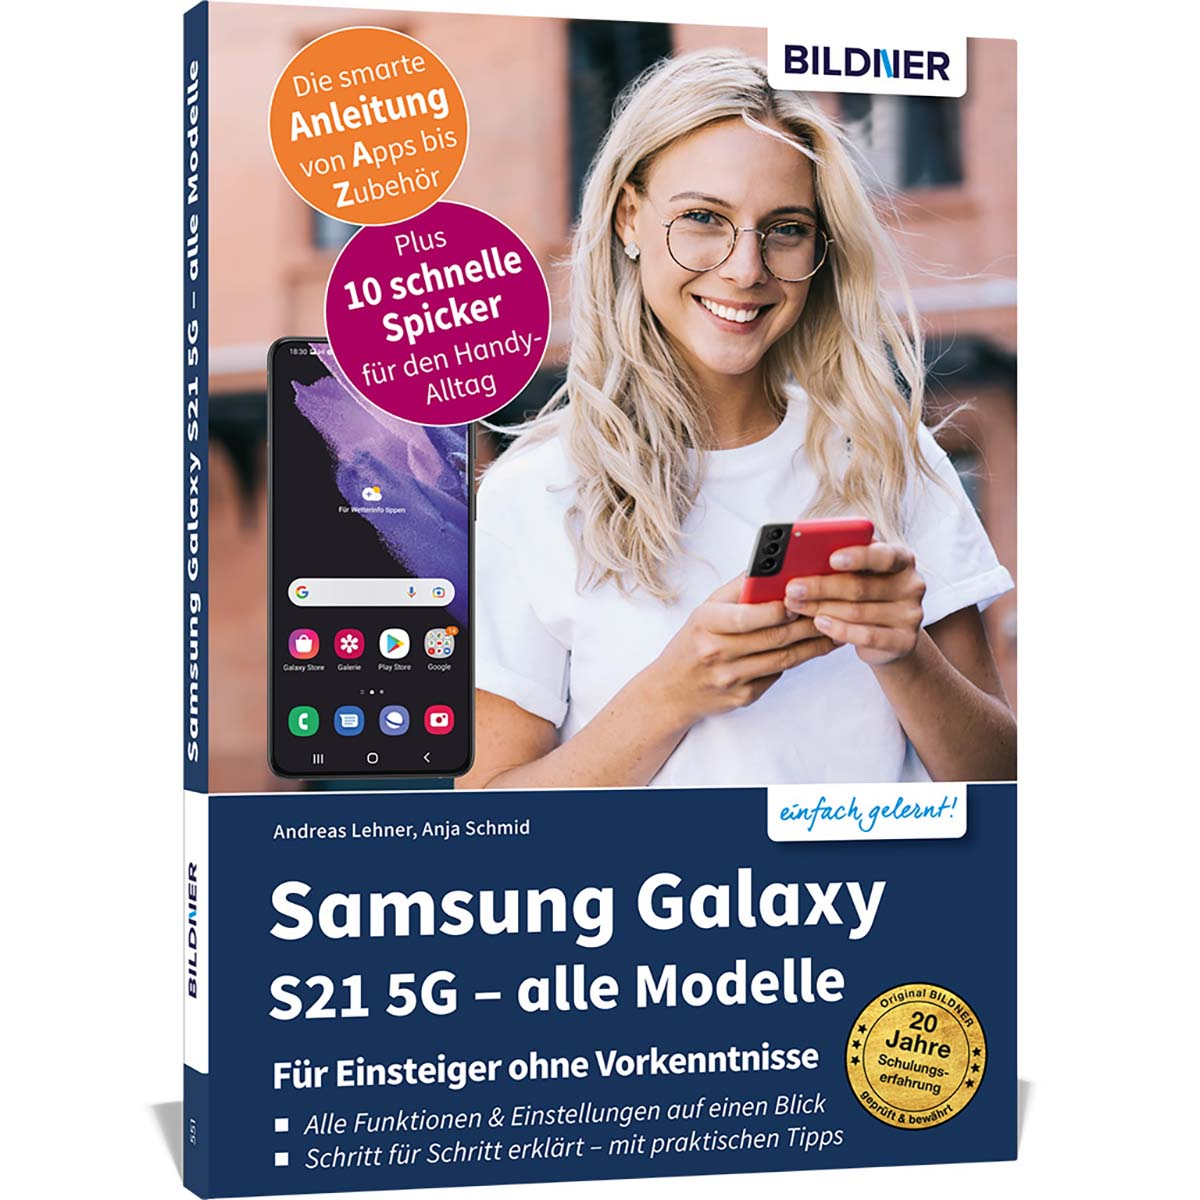 Samsung Galaxy S21 5G - alle Modelle